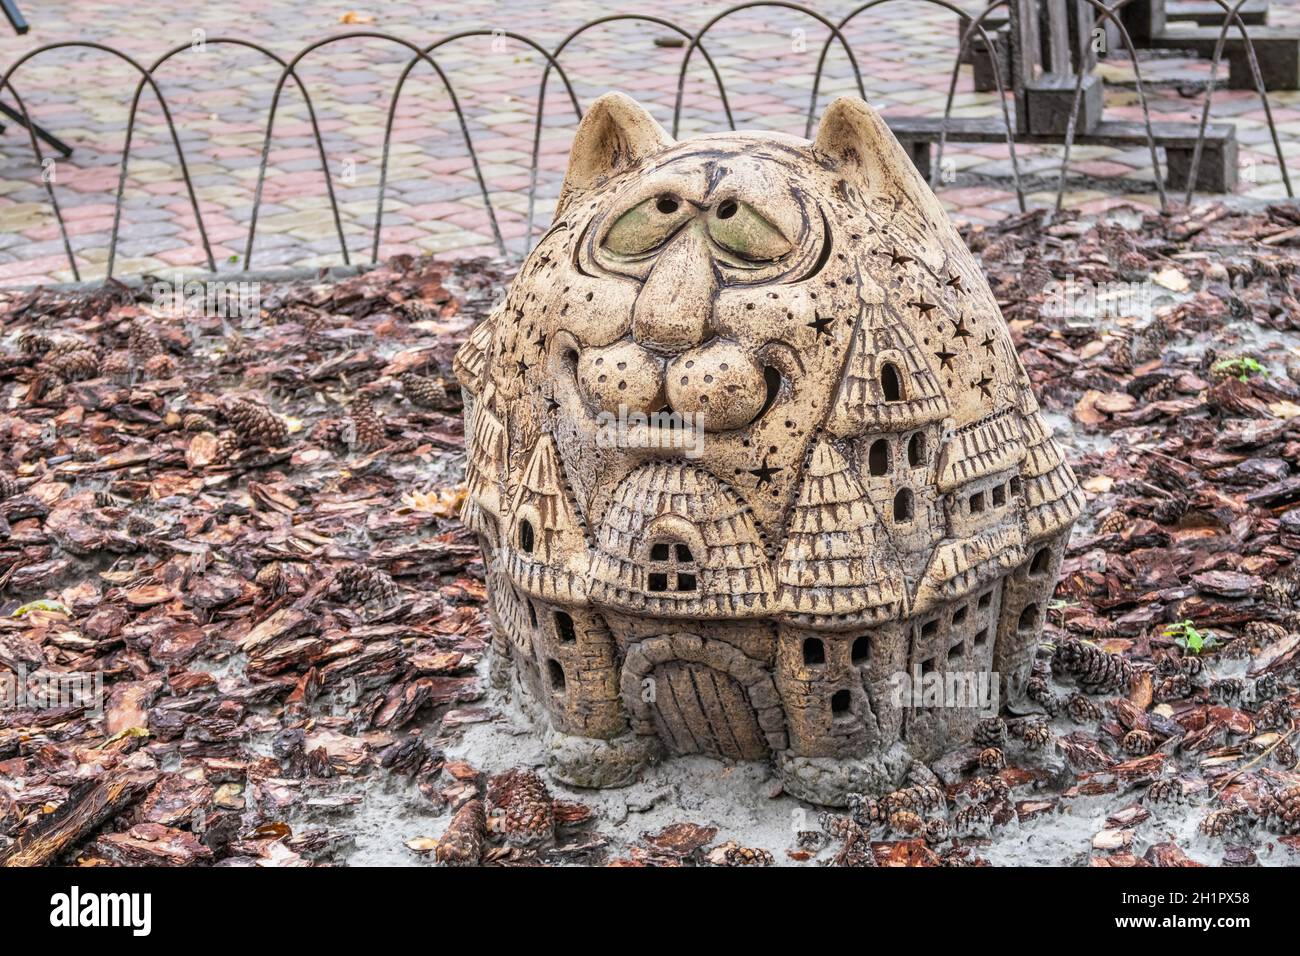 Kharkiv, Ukraine 07.15.2020. sculpture de parc dans l'écopark de Feldman à Kharkiv, Ukraine, un jour d'été Banque D'Images